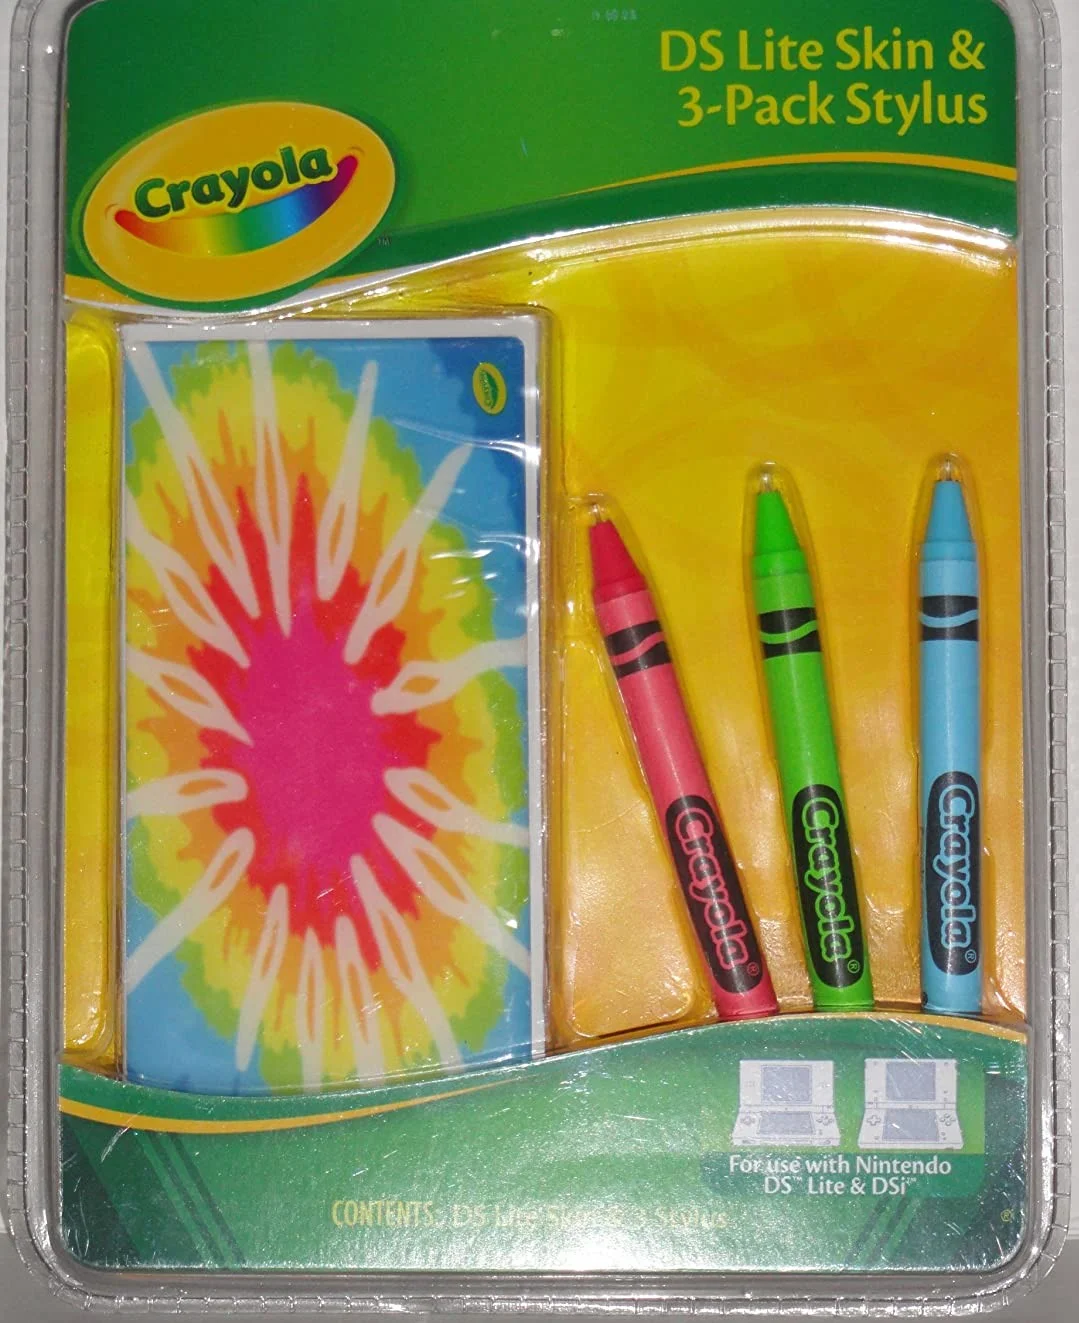  Crayola DS Lite Skin + Stylus 3-Pack